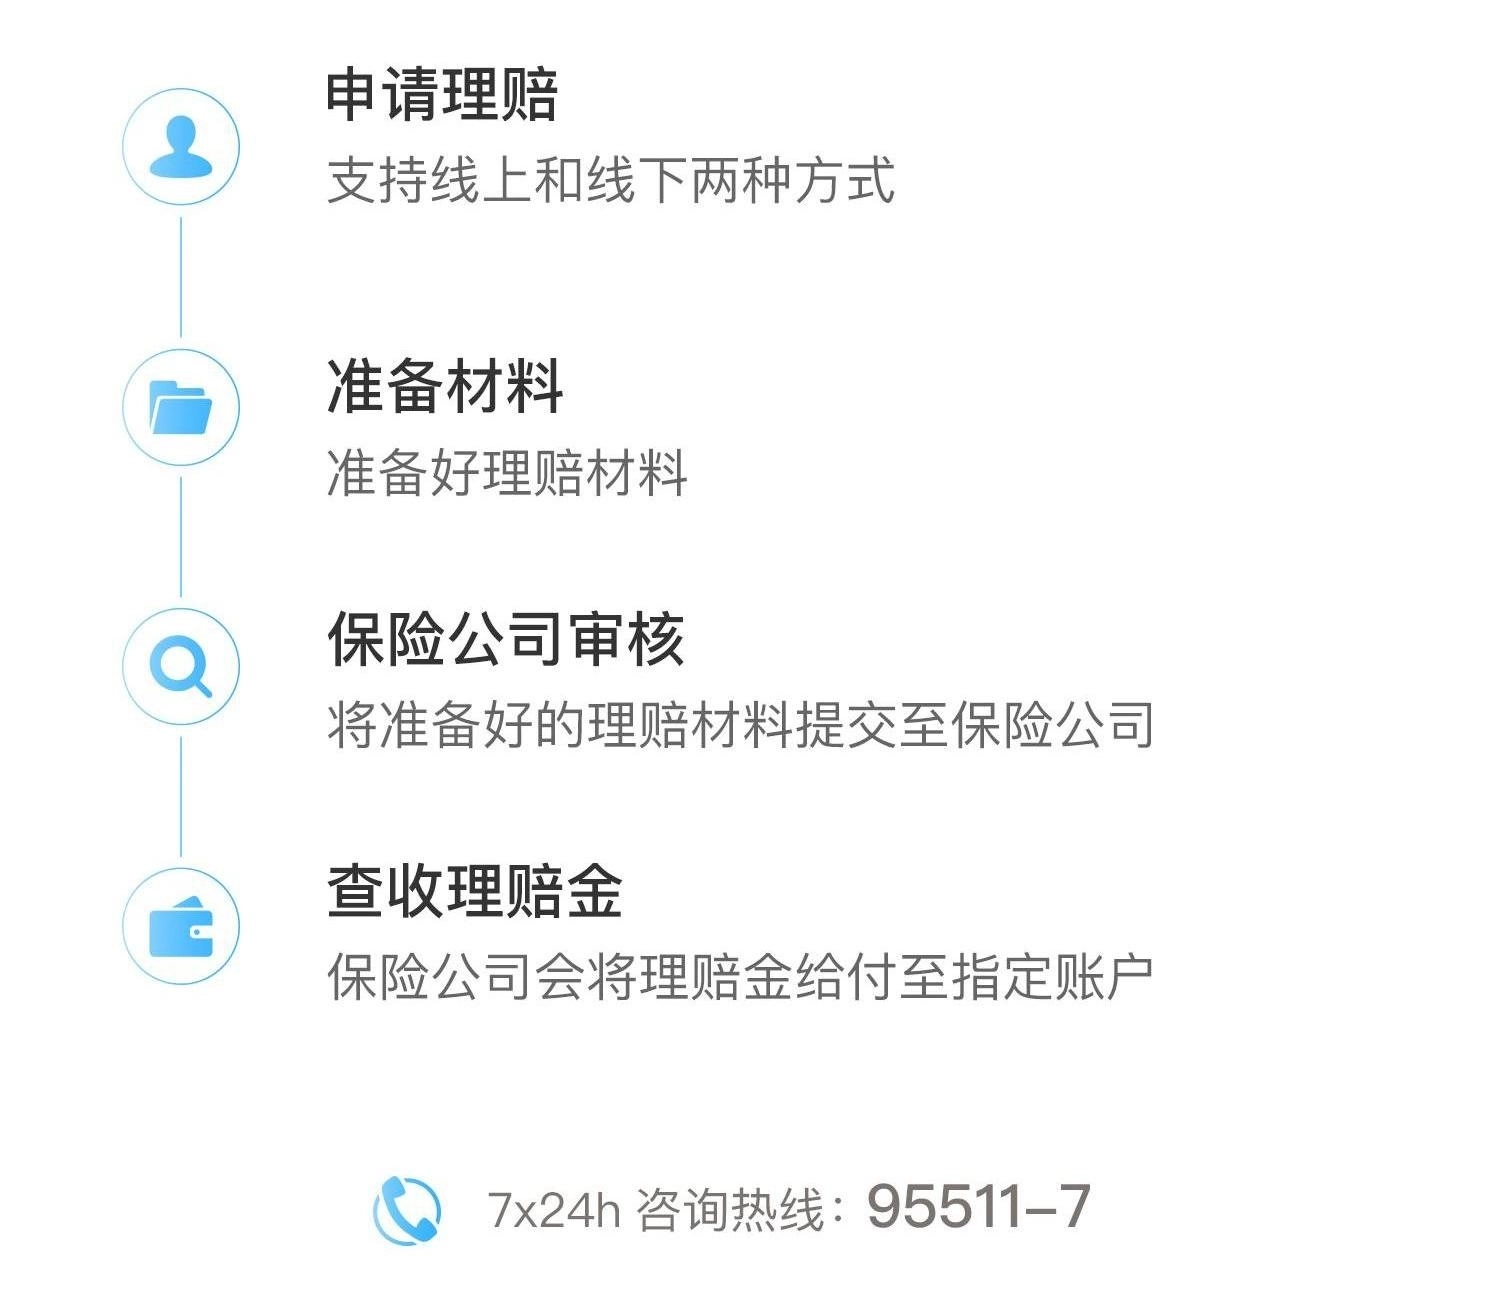 平安互联网北京市医保补充医疗保险